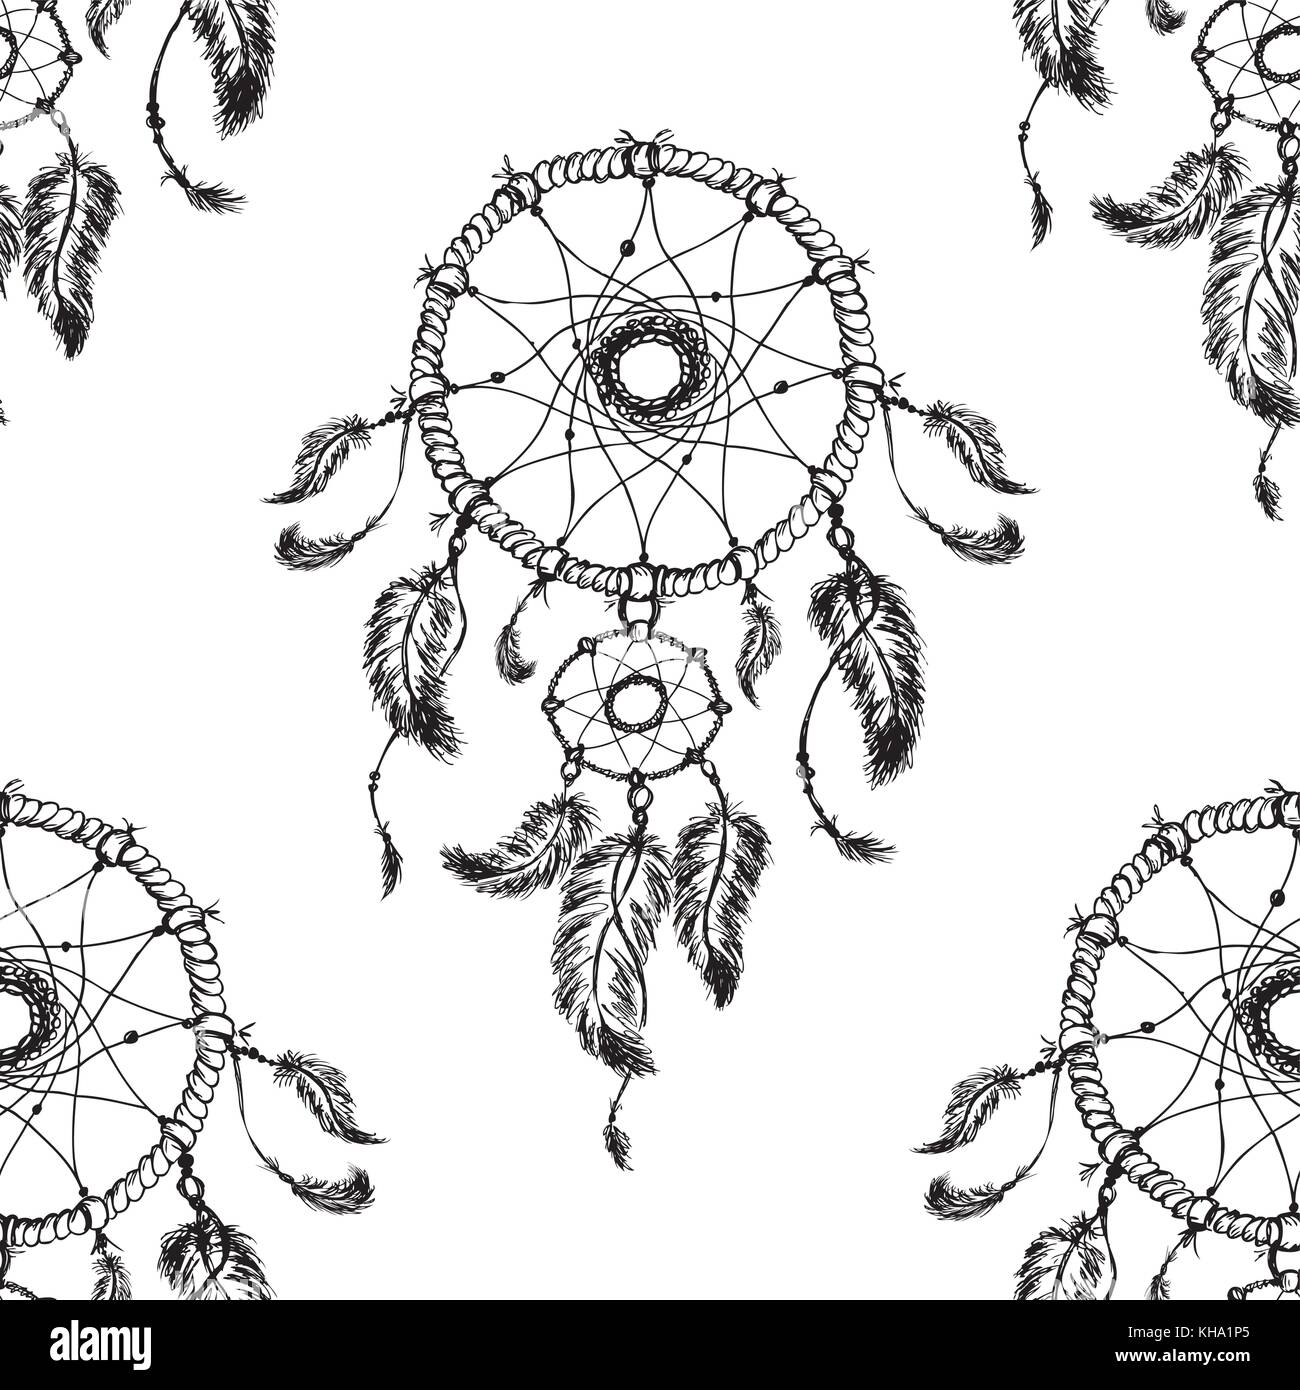 Handgezeichneten dreamcatcher mit Federn. nahtlose Muster. Ethnische Illustration, Tribal, Indianer traditionelle Symbol. Stock Vektor